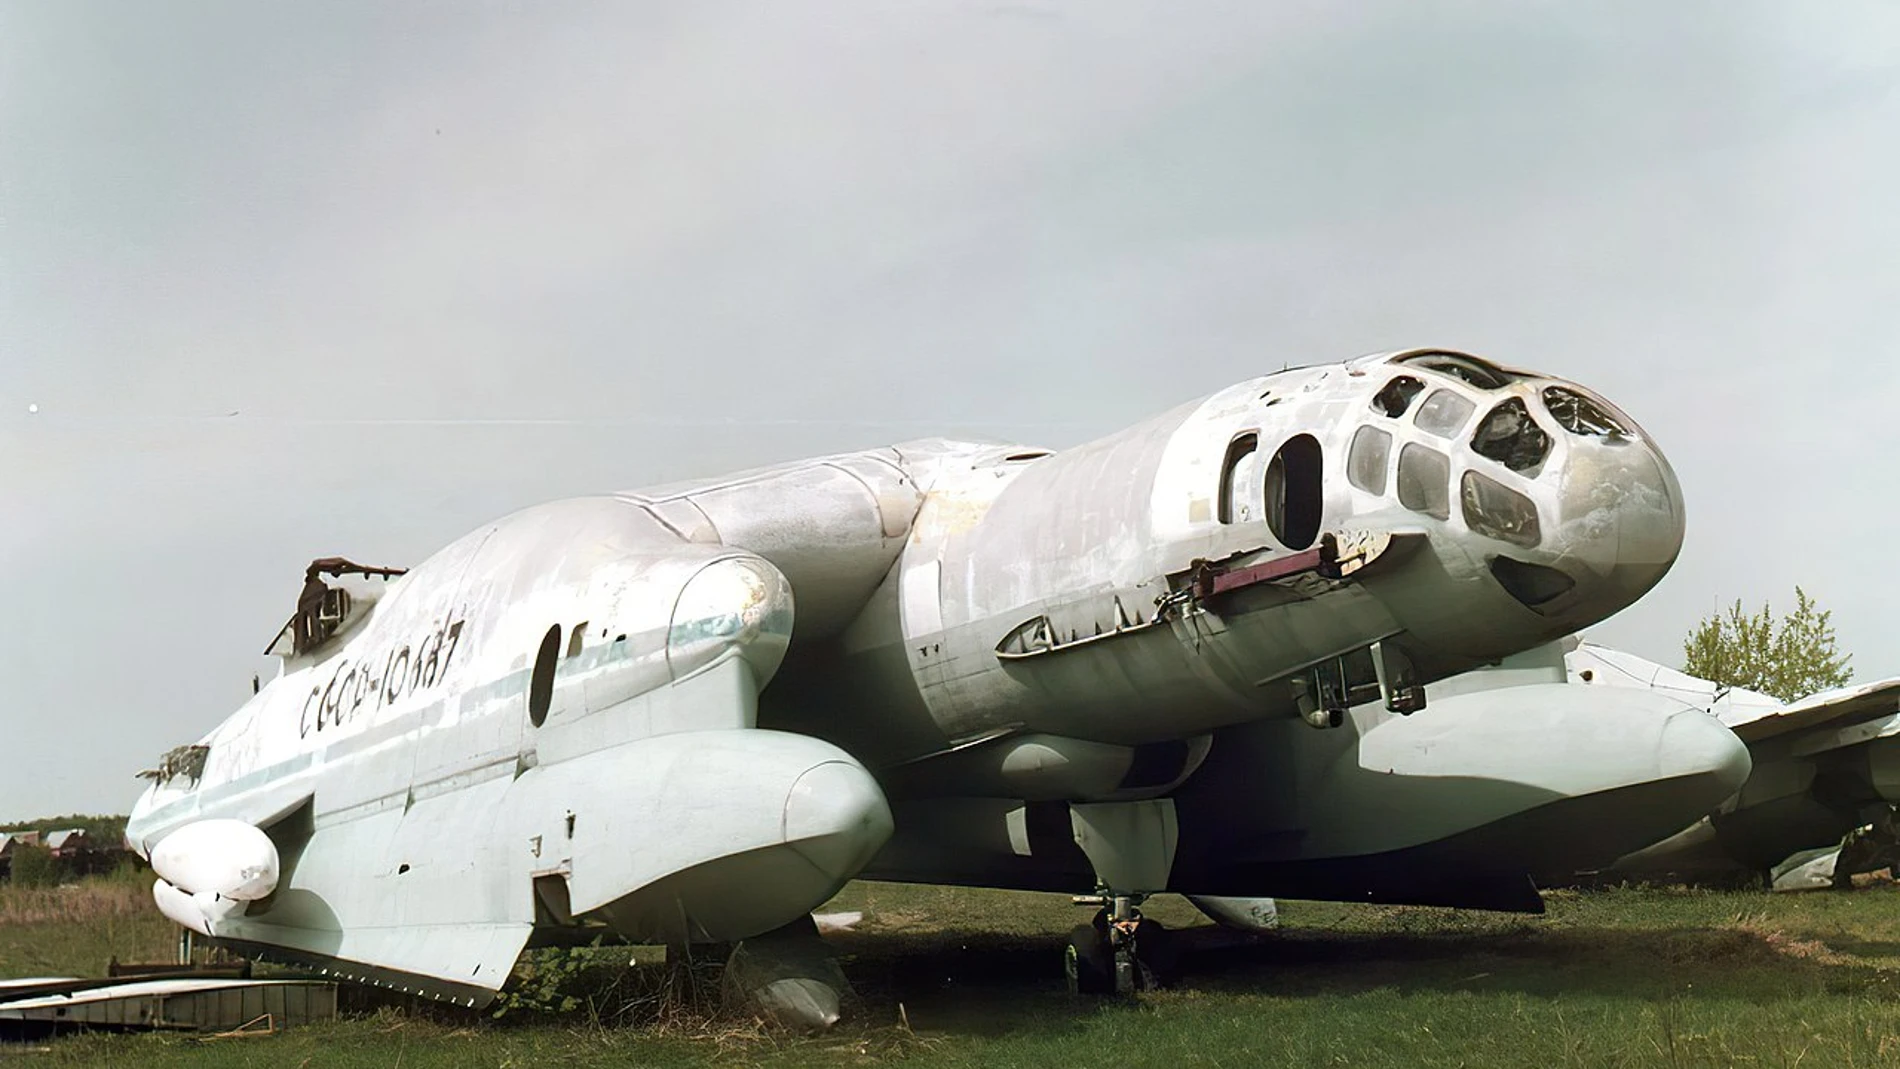 Prototipo del VVA-14 M1 en el Museo de la Aviación de Monino | Fuente: Dominio Público